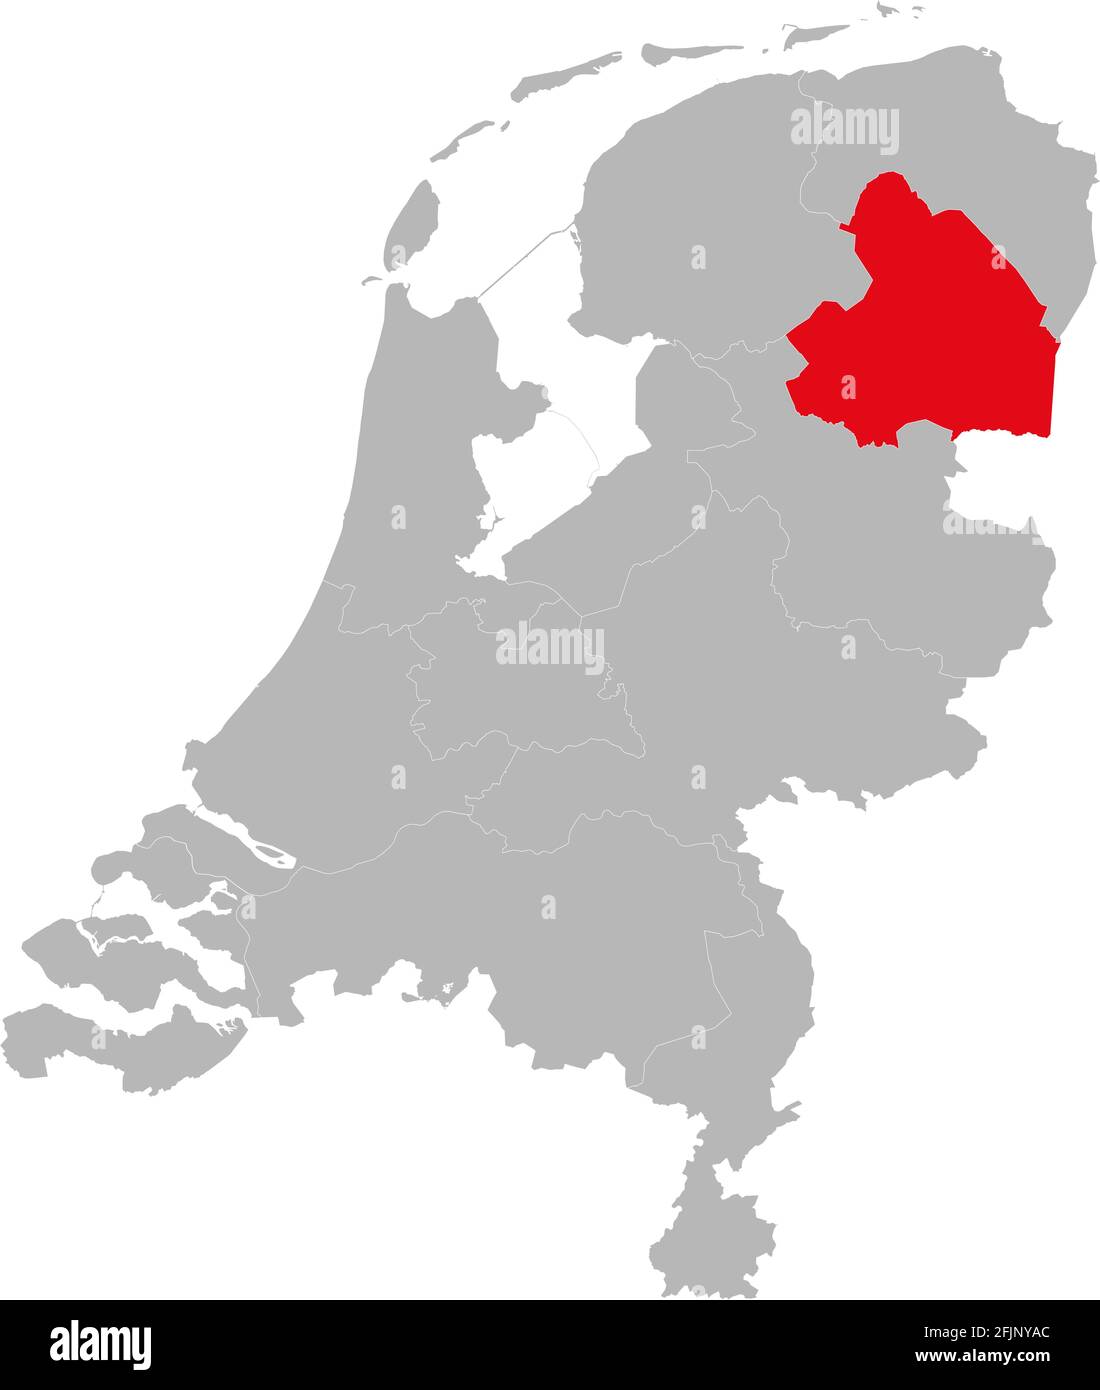 Provinz Drenthe auf der politischen Landkarte der niederlande hervorgehoben. Hintergründe, Diagramme, Geschäftskonzepte. Stock Vektor